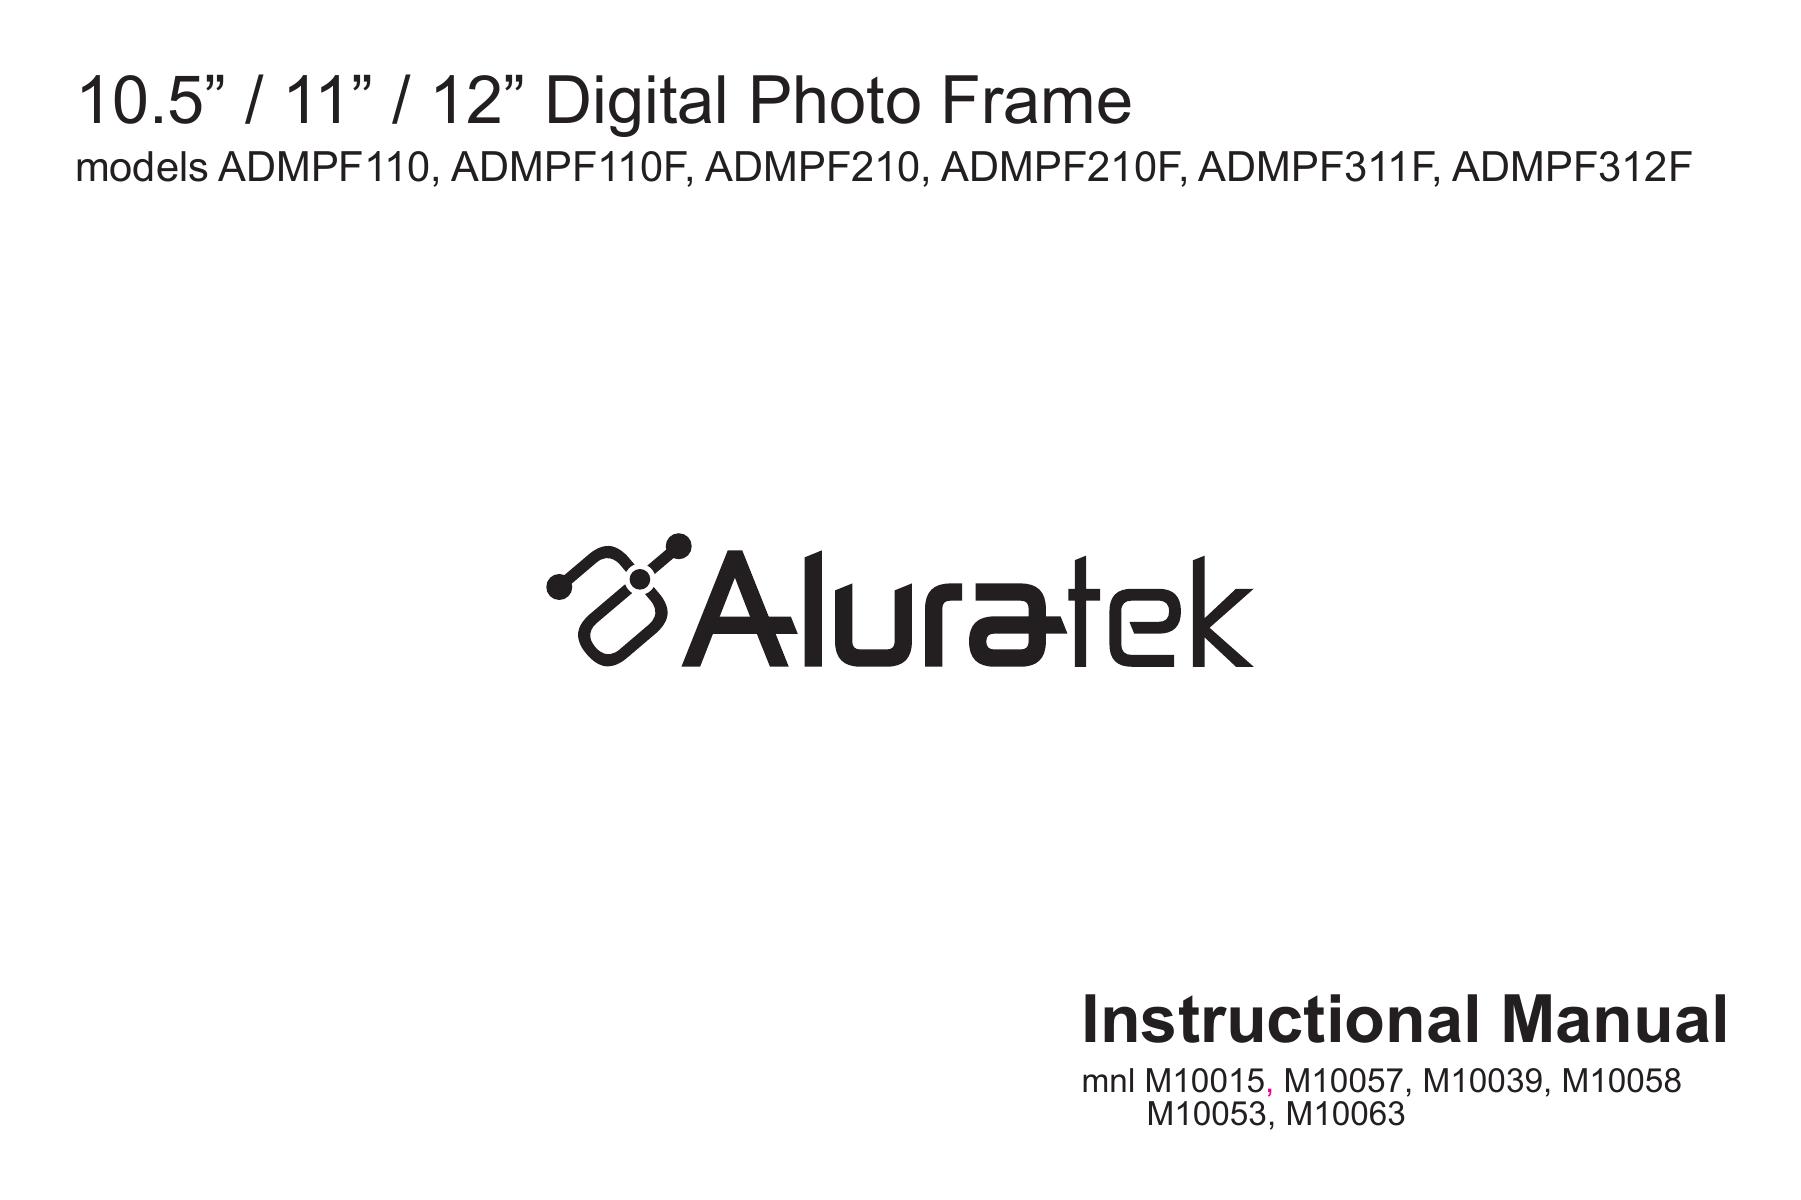 Aluratek M10057 Digital Photo Frame User Manual